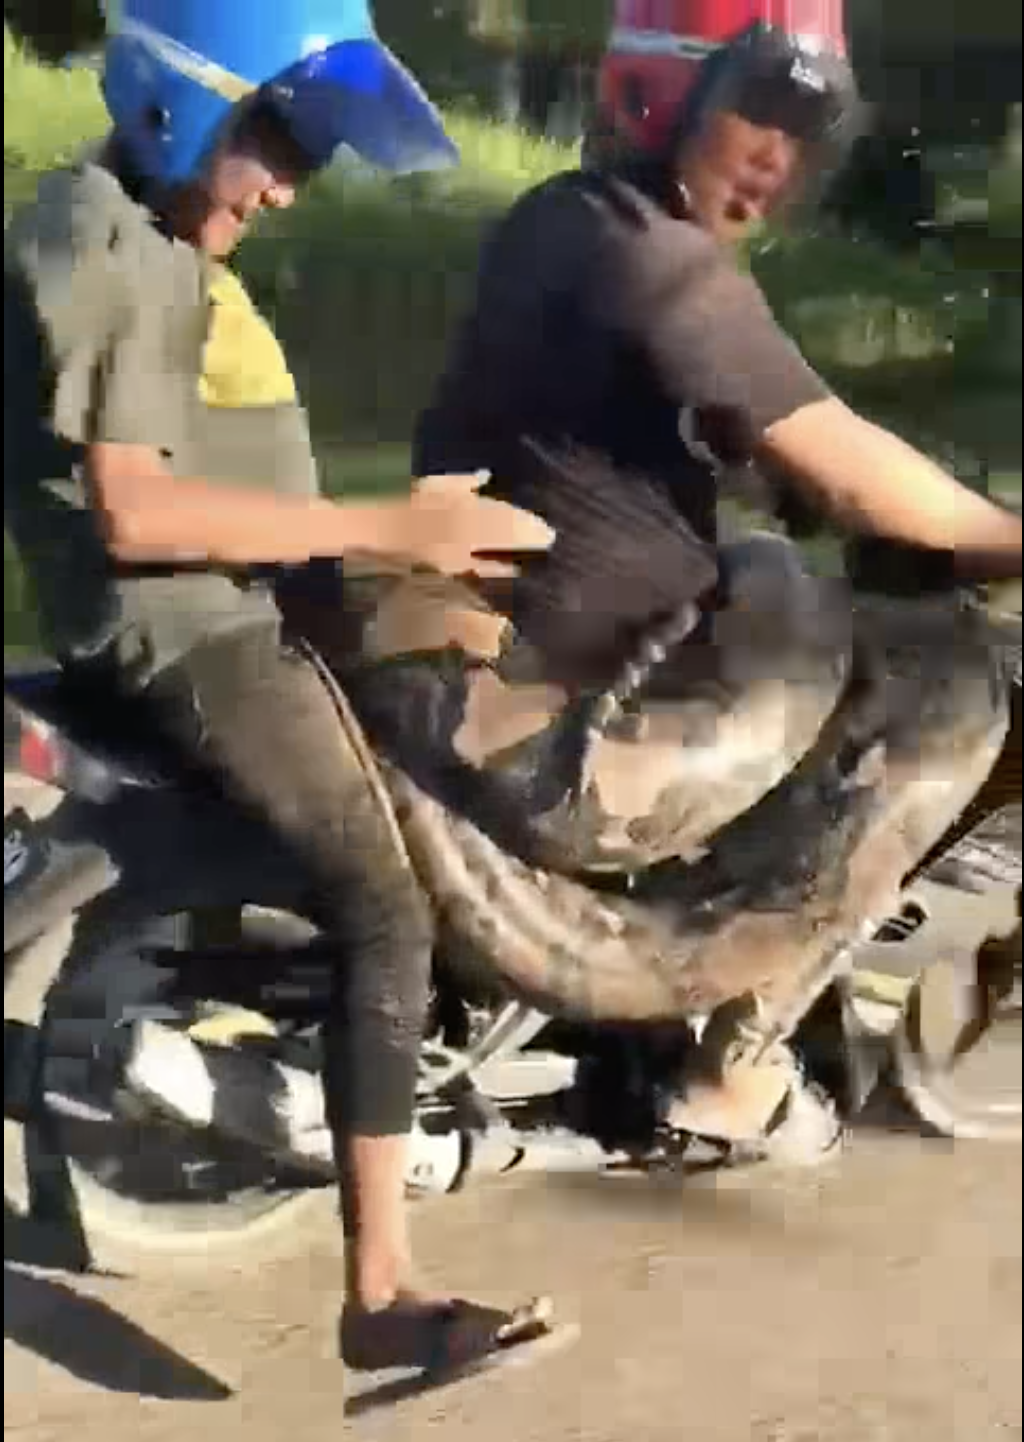 200kg python spotted enjoying a motorcycle ride in kelantan